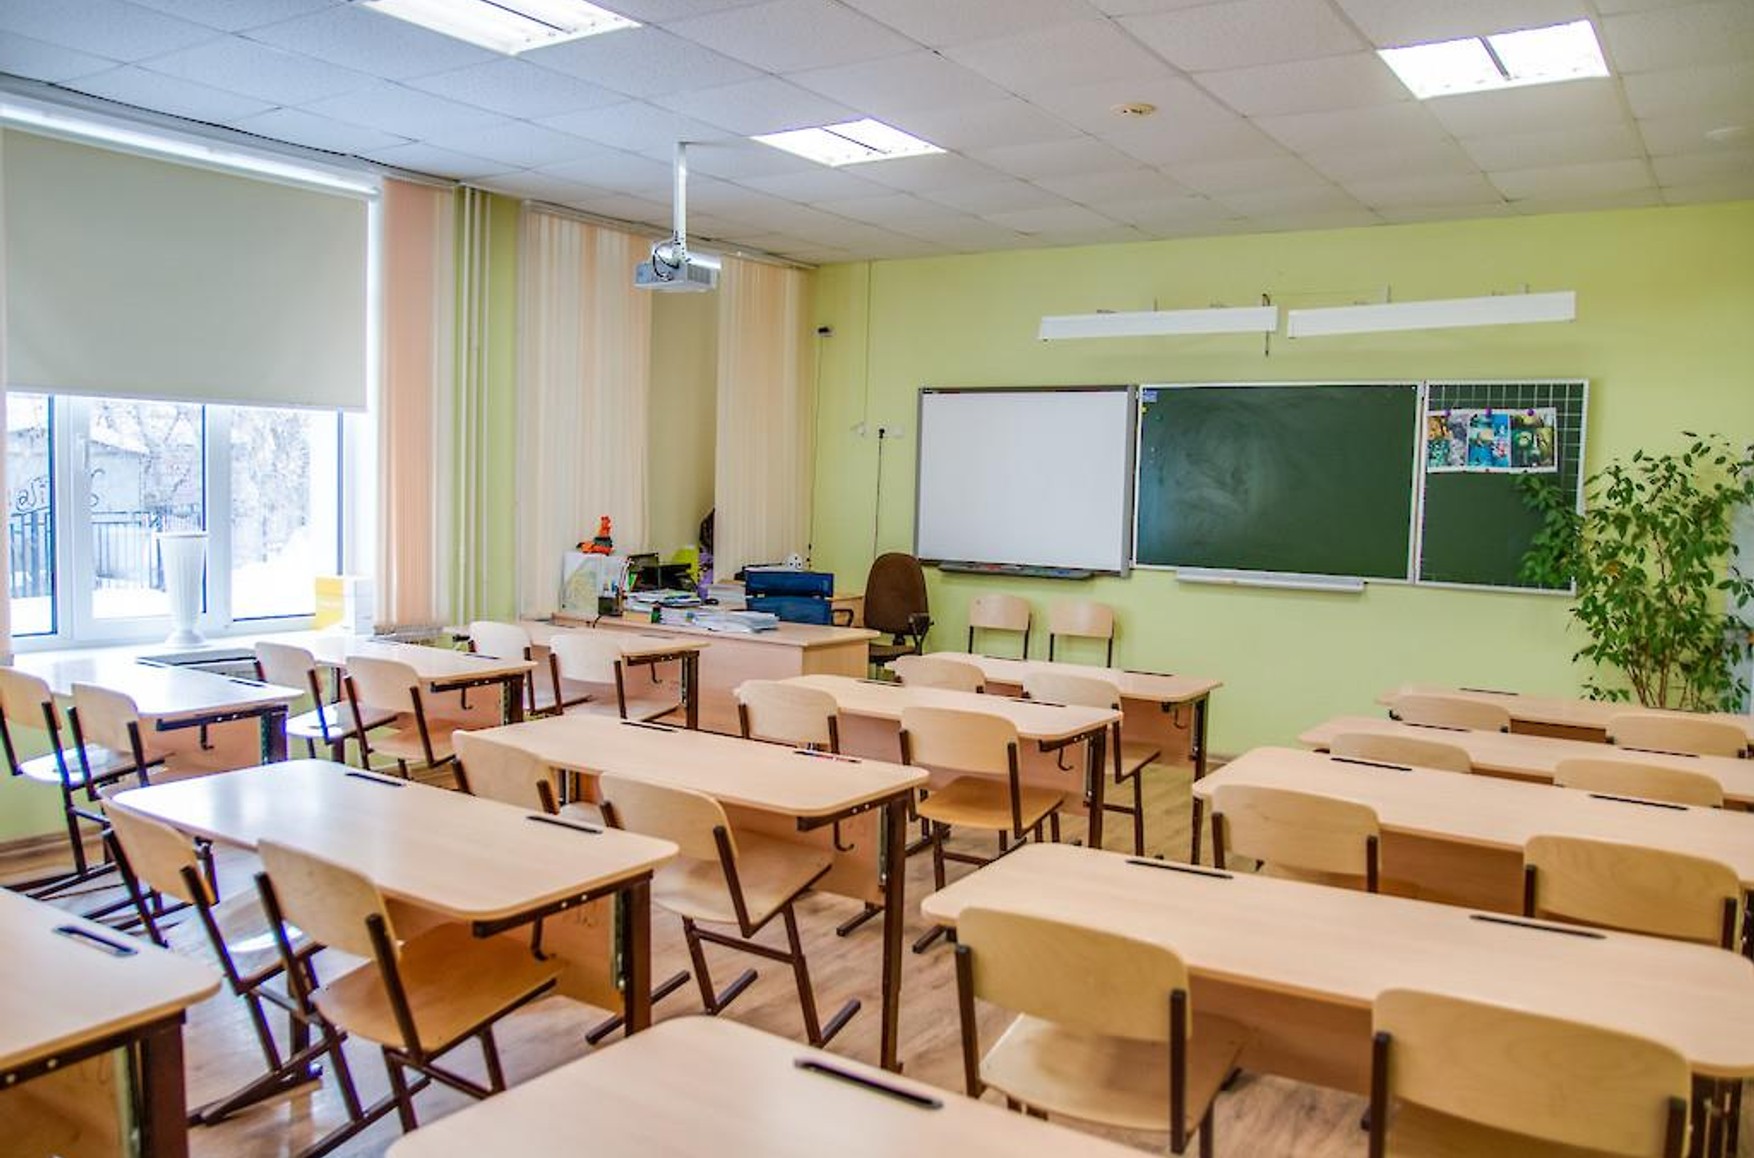 Керівництво Пензенської школи попросило поліцію перевірити пости восьмикласниці на екстремізм